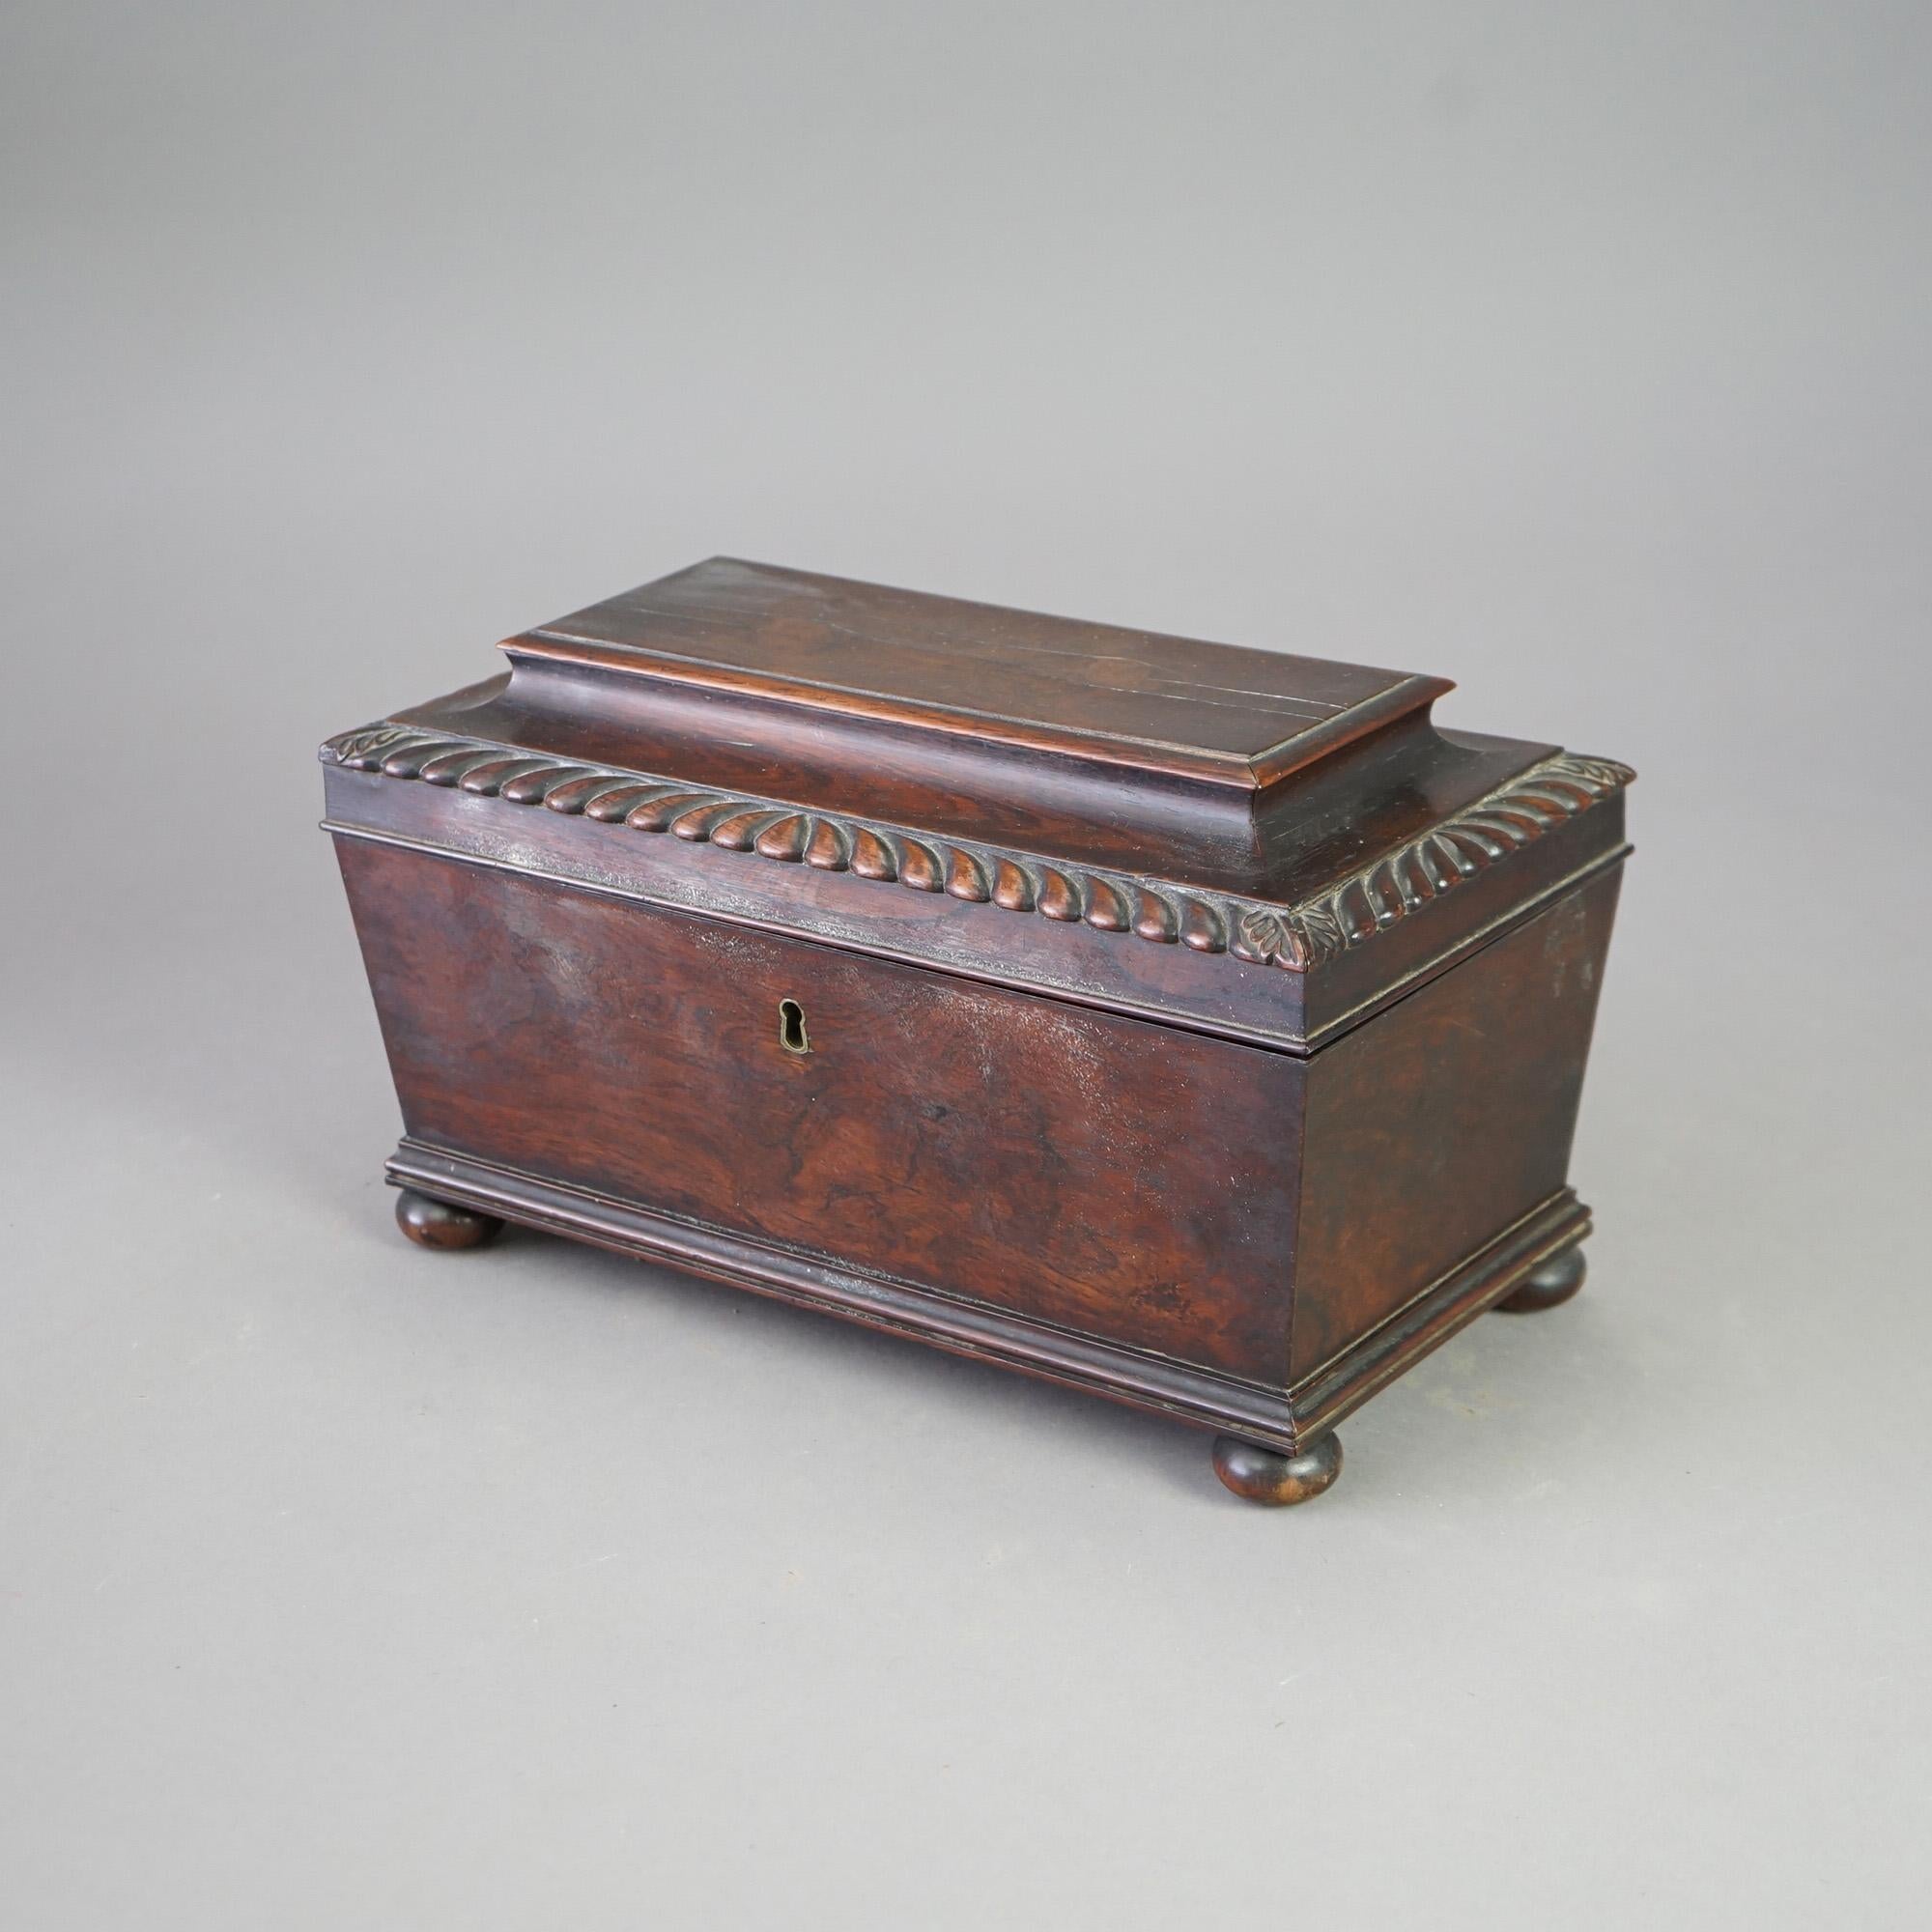 Ancienne boîte à thé anglaise George III en bois de rose, en forme de coffret avec des éléments à godrons et reposant sur des pieds en forme de chignon, vers 1820

Dimensions - 8 